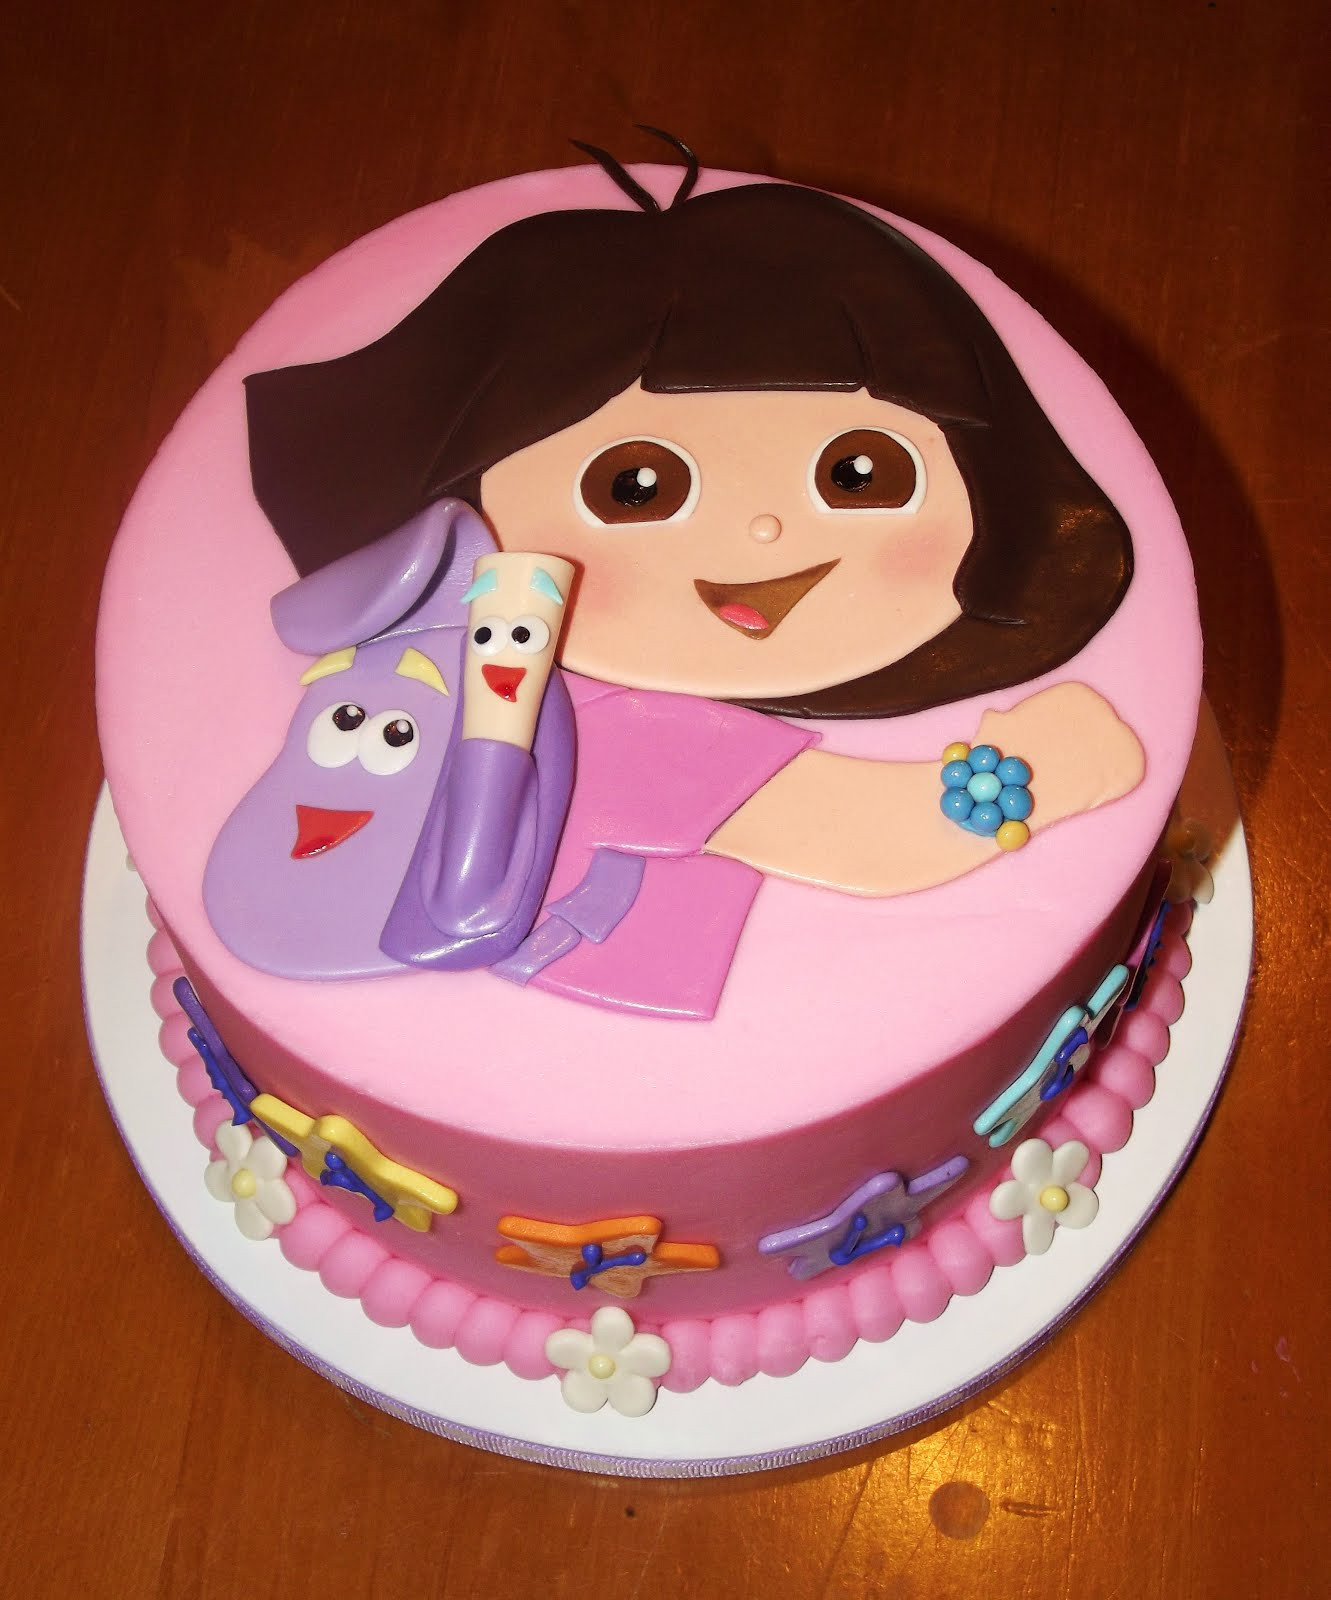 Dora The Explorer Birthday Cakes
 Suzy s Sweet Shoppe Dora the Explorer Birthday Cake